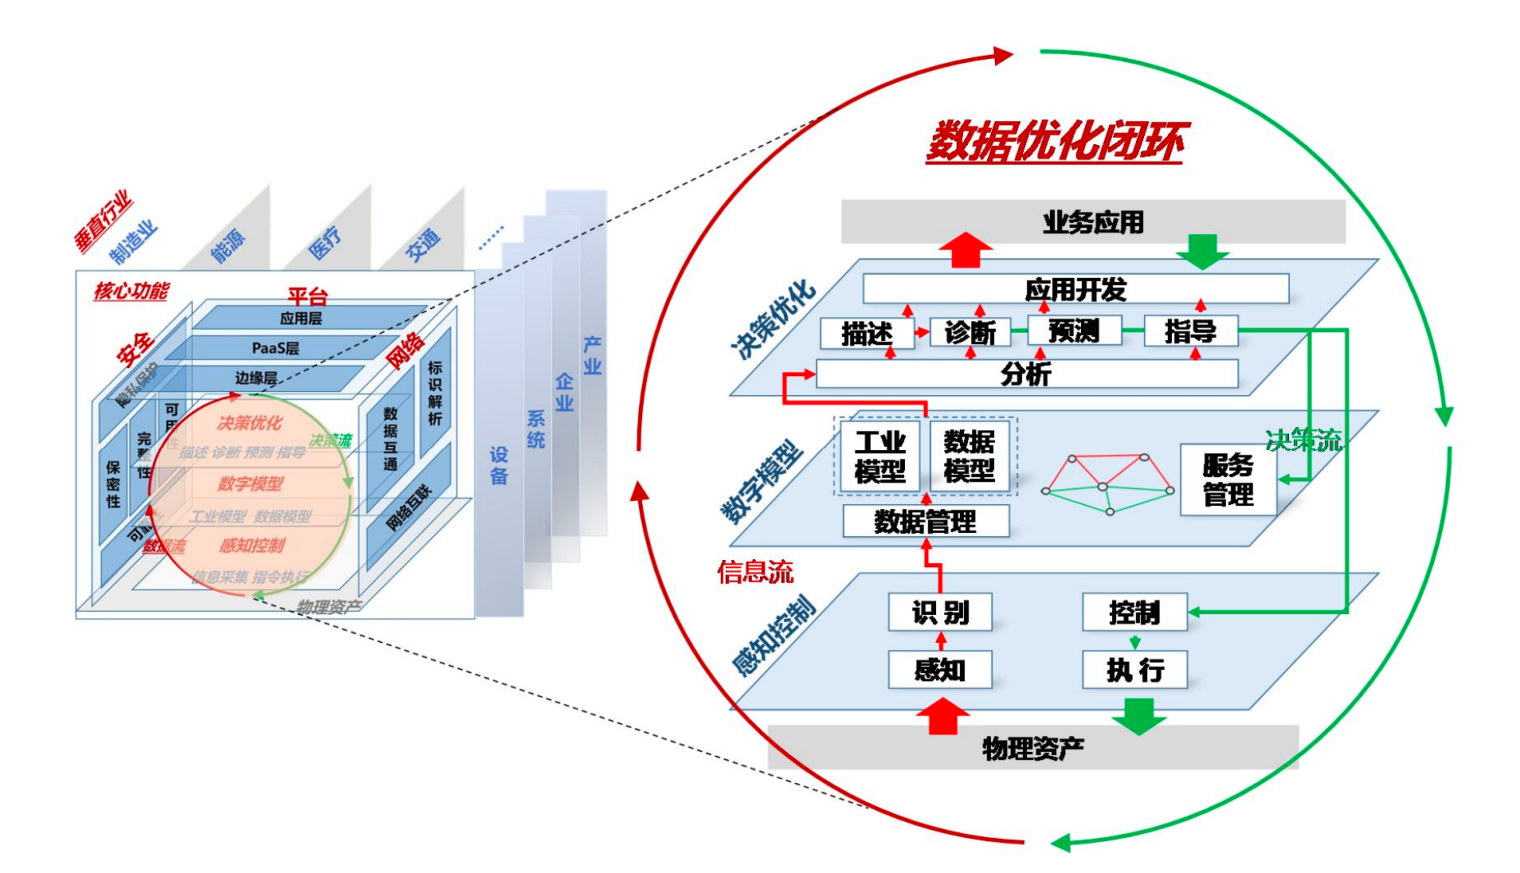 图片来源：《工业互联网体系架构 2.0 报告》 图1.png